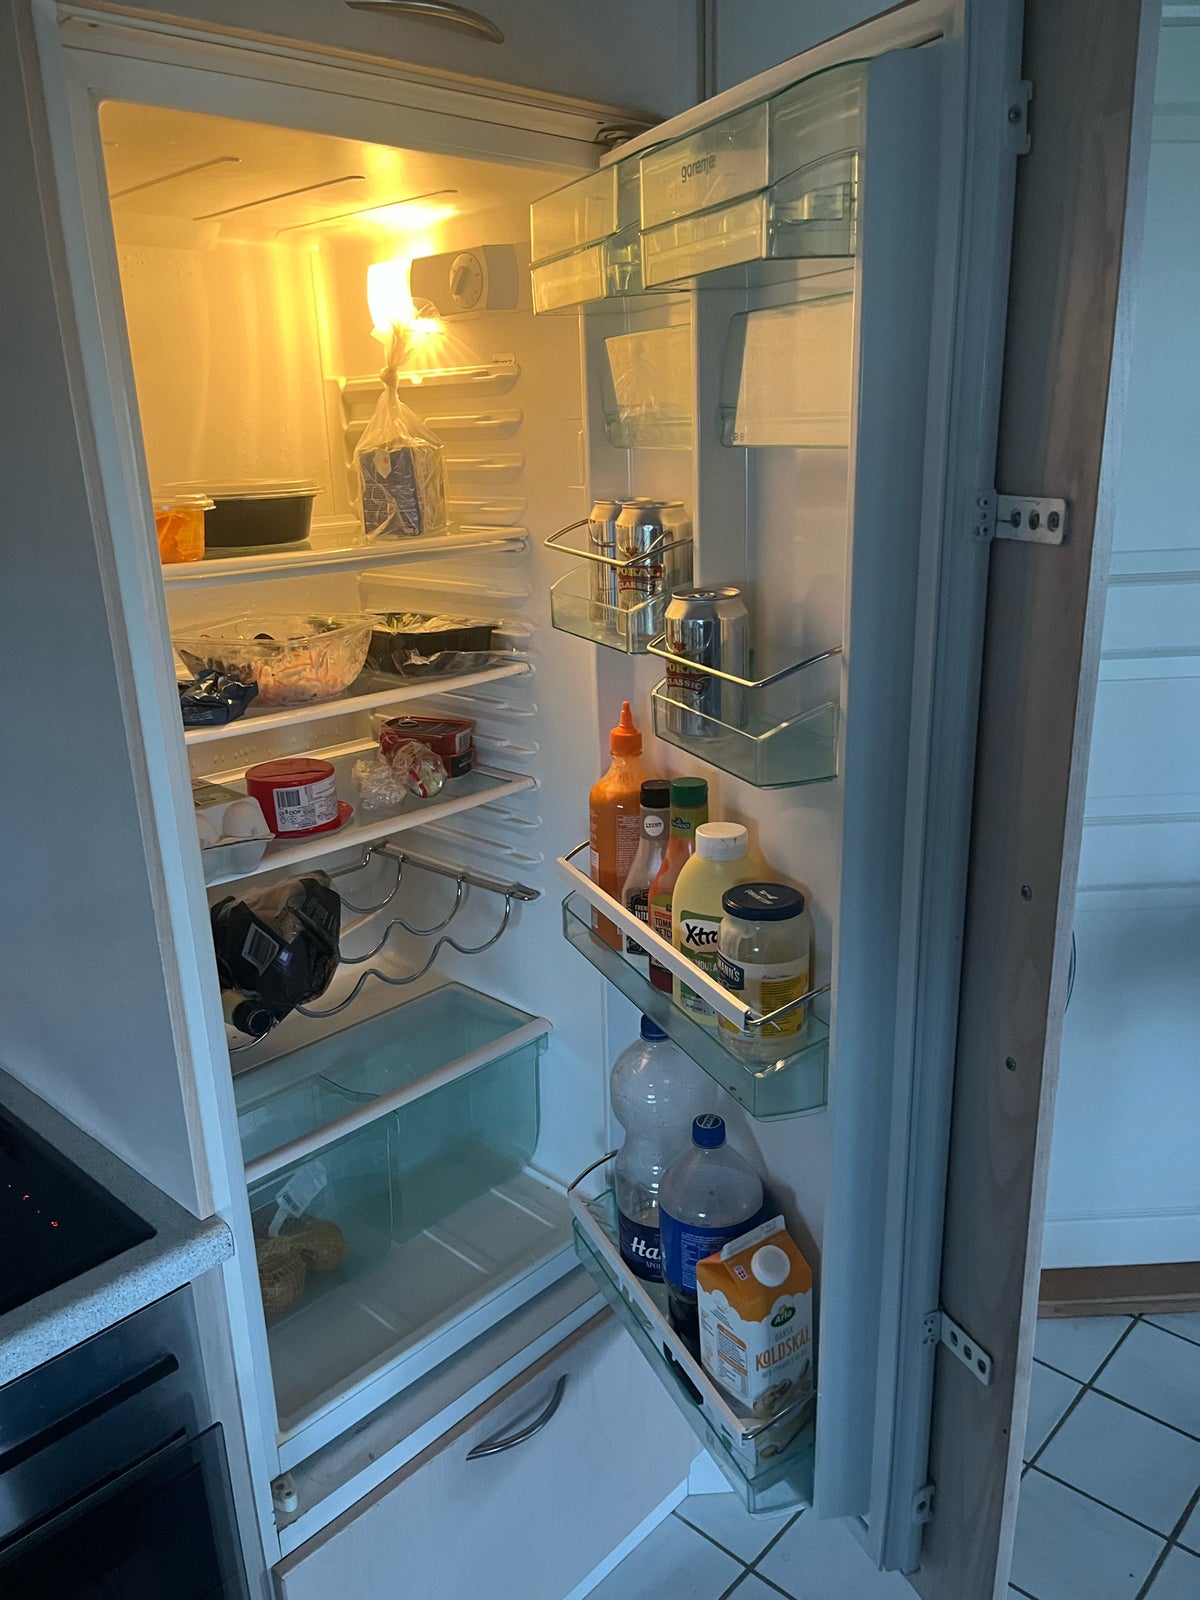 Andet køleskab, Gorenje, b: 56 d: 55 h: 123